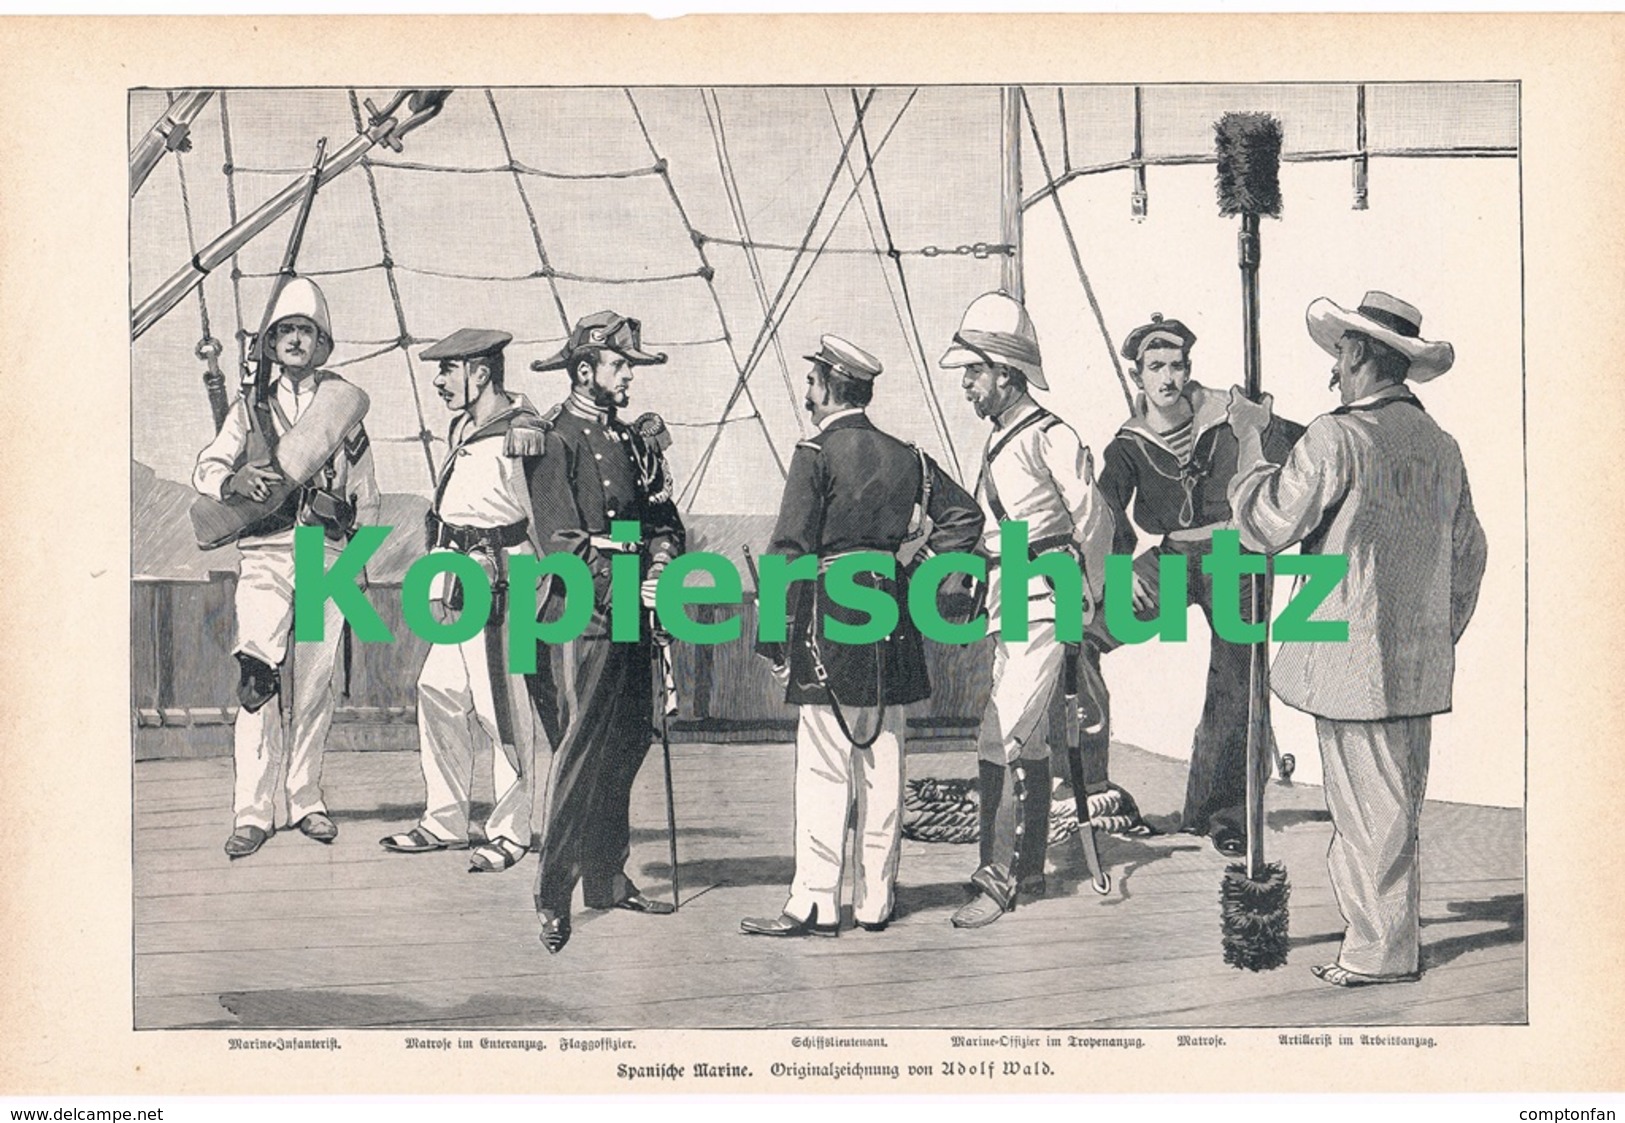 a102 197 Heer und Flotten Spanien und USA 1 Artikel mit 4 Bildern von 1897 !!